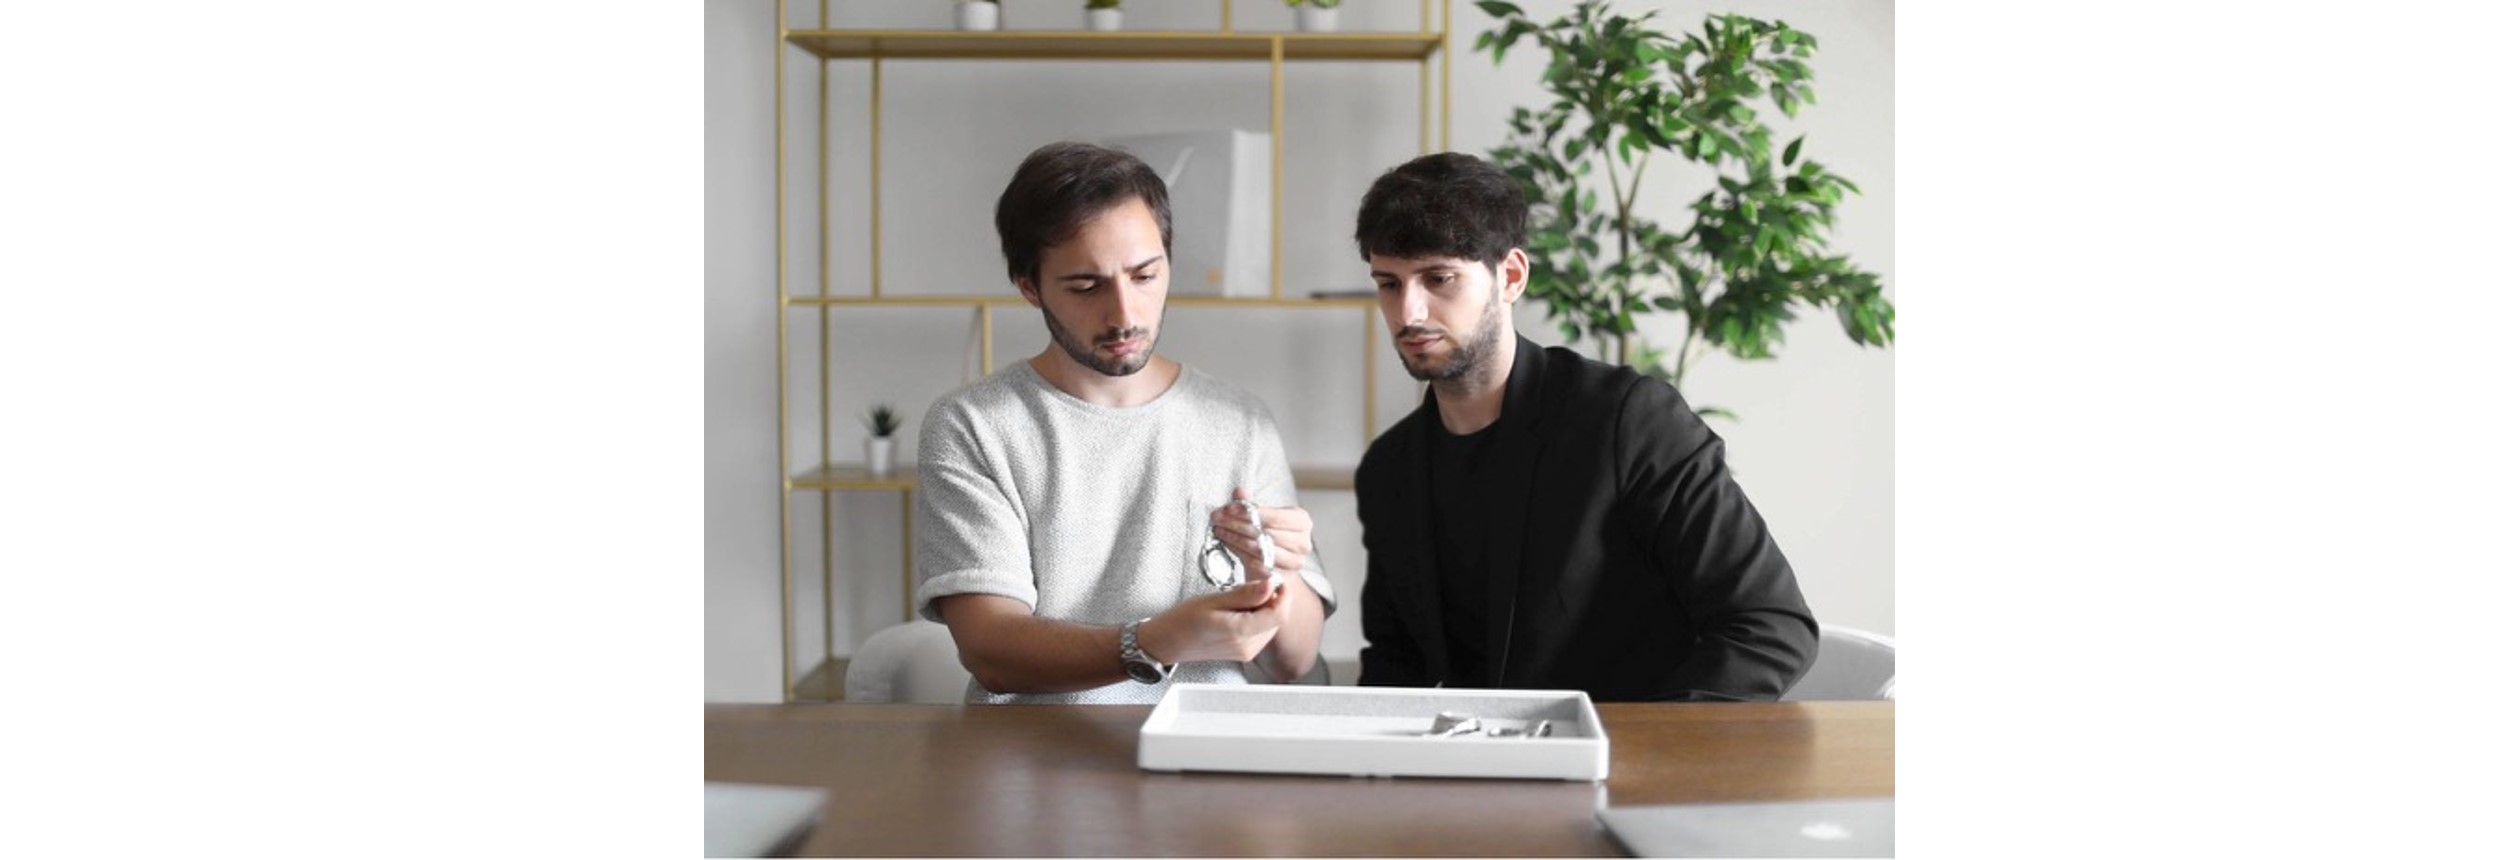 In conversation with Alberto e Alessandro Morelli fondatori del brand Venezianico